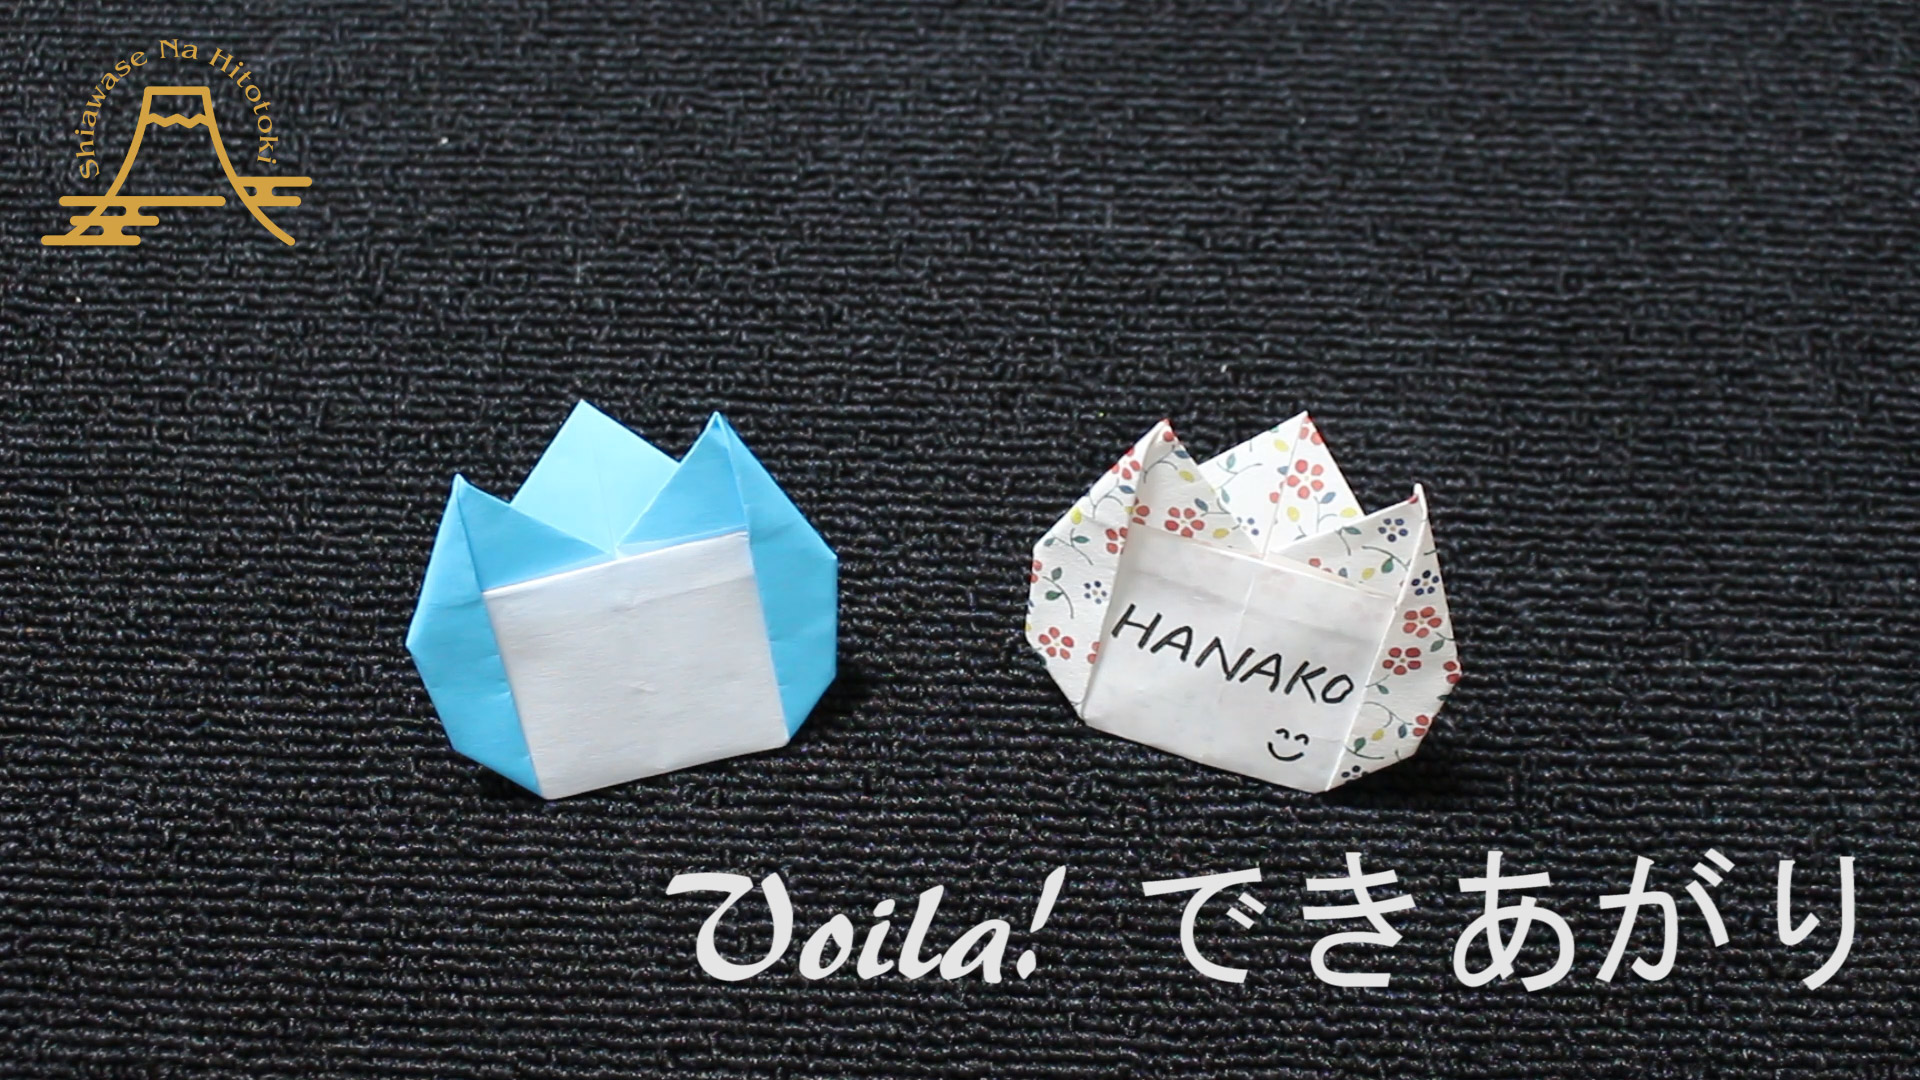 簡単 折り紙 名札 ネームプレート 簡単手作り名札をどうぞ 折り紙の折り方 幸せなひと時